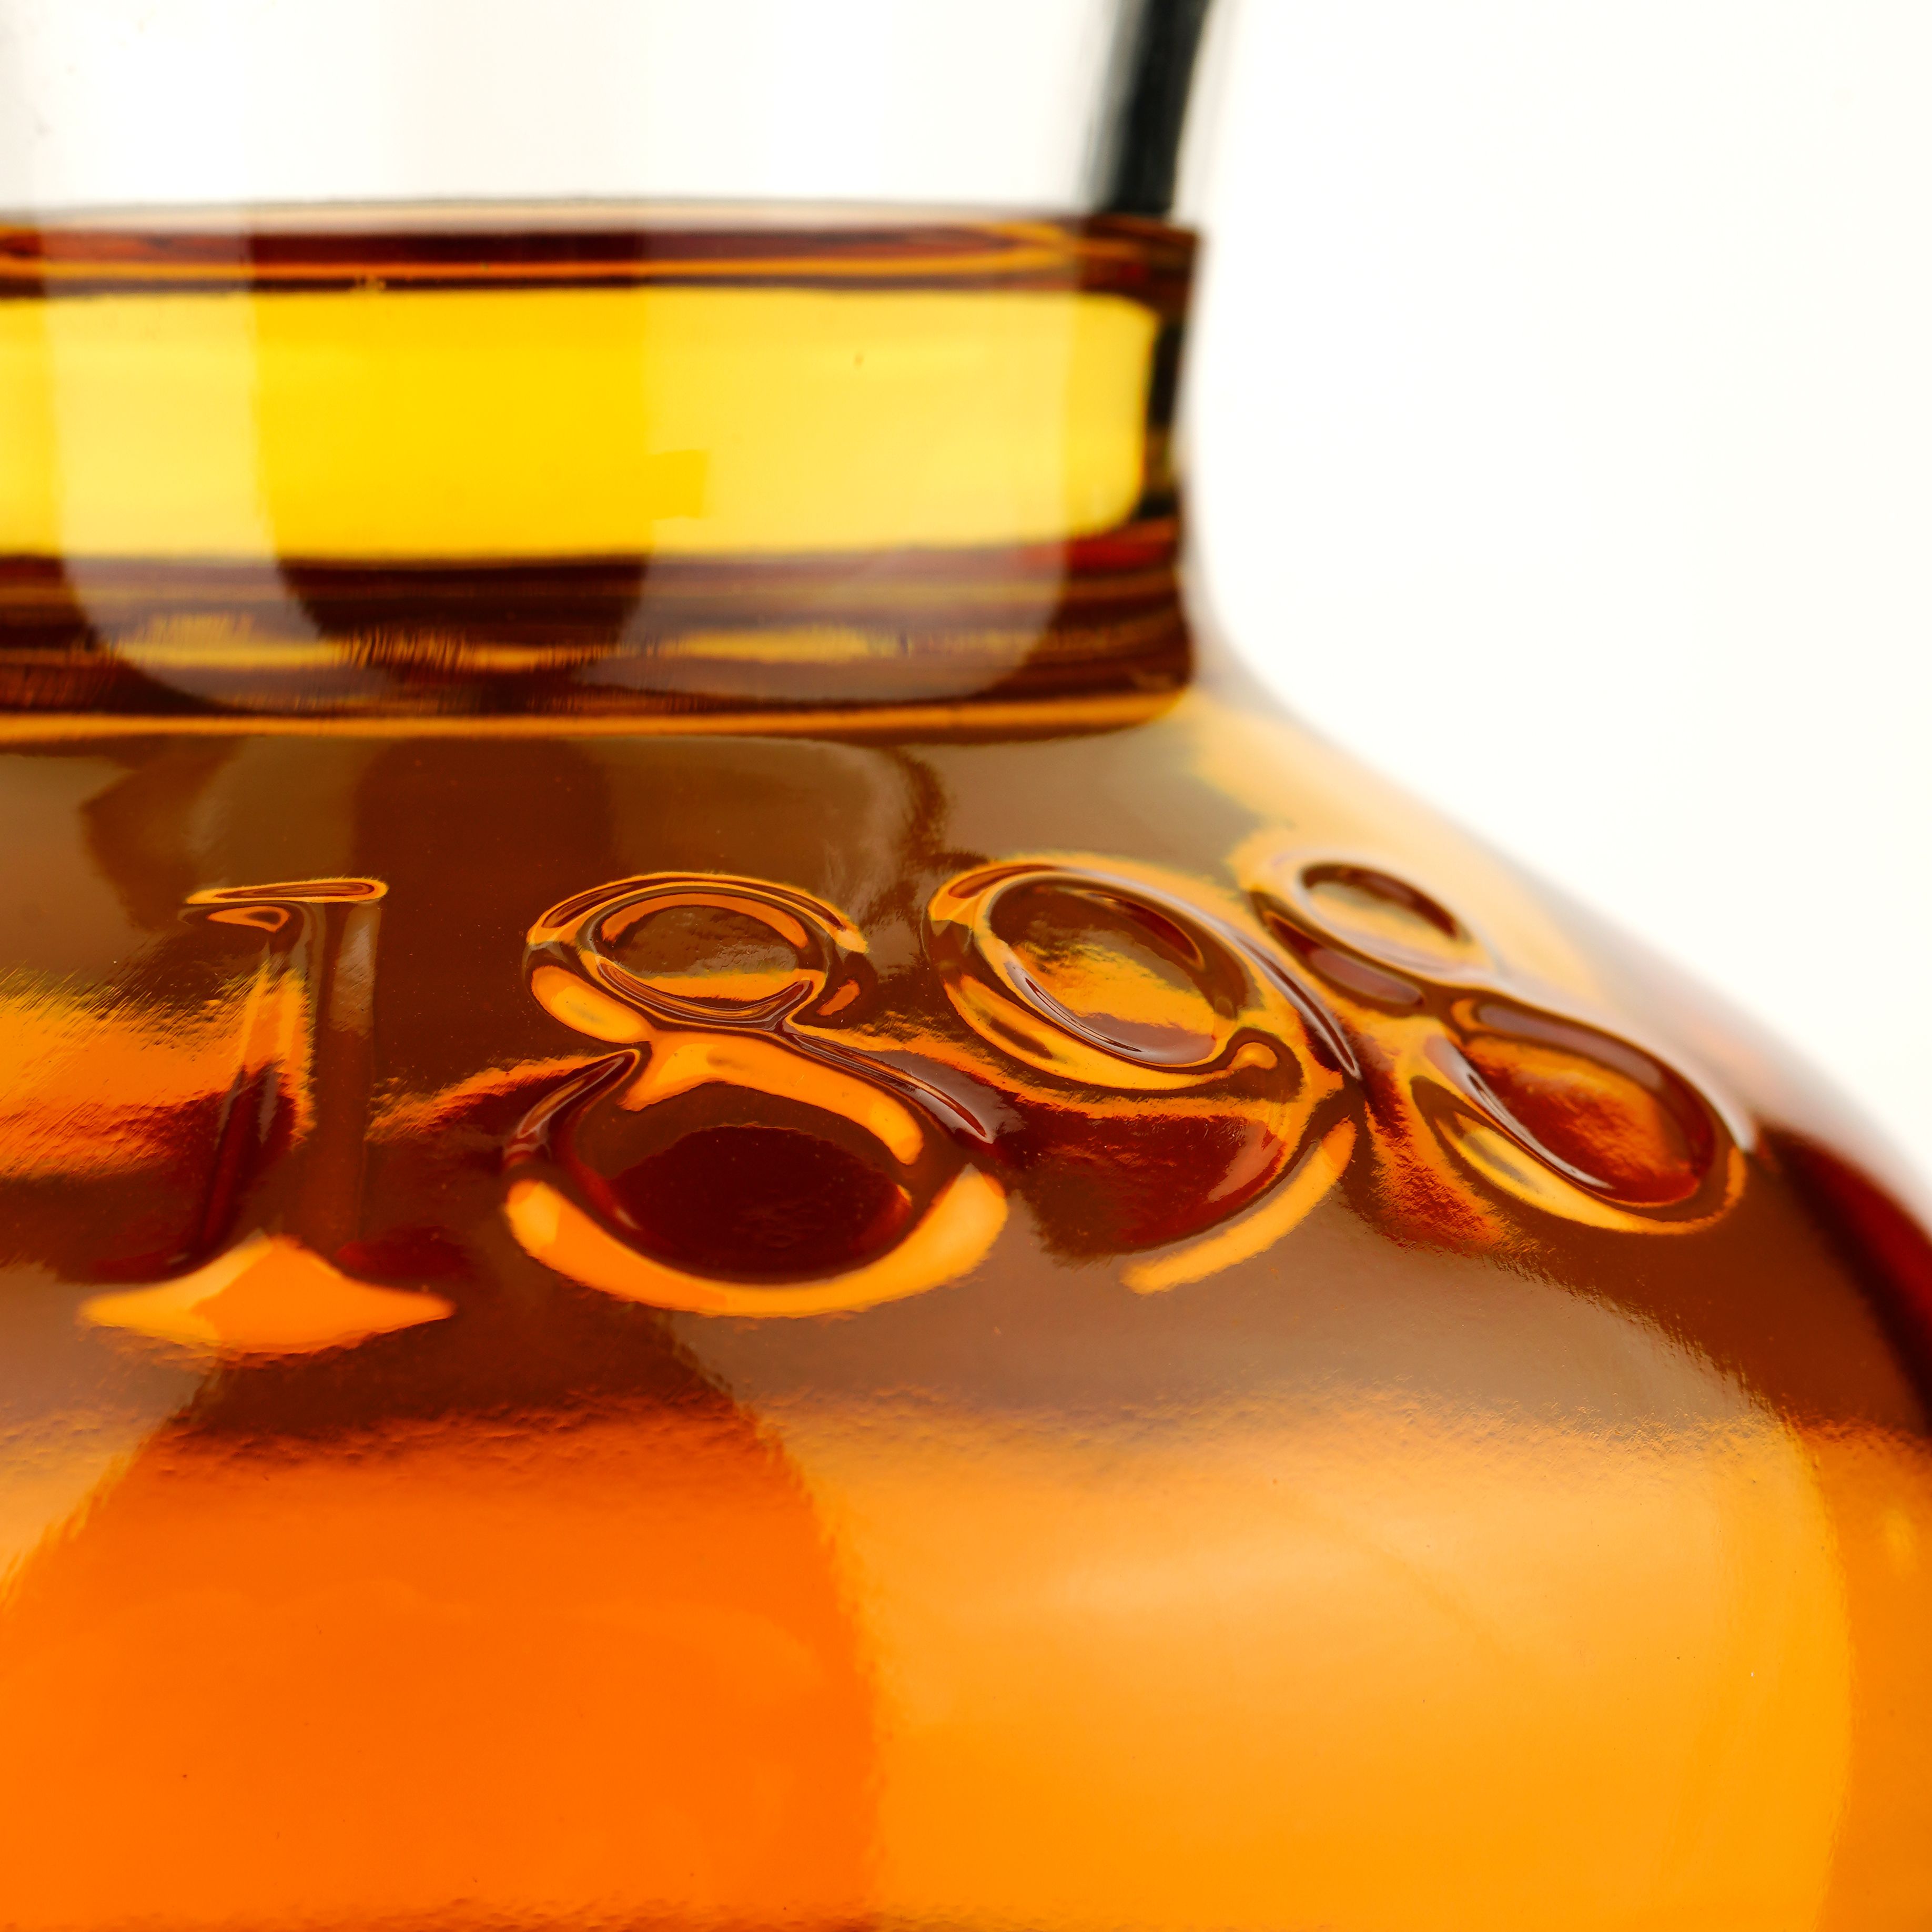 Виски BenRiach 18 Years Old Rum Barrel Cask 1644 Single Malt Scotch Whisky, в подарочной упаковке, 57,6%, 0,7 л - фото 6